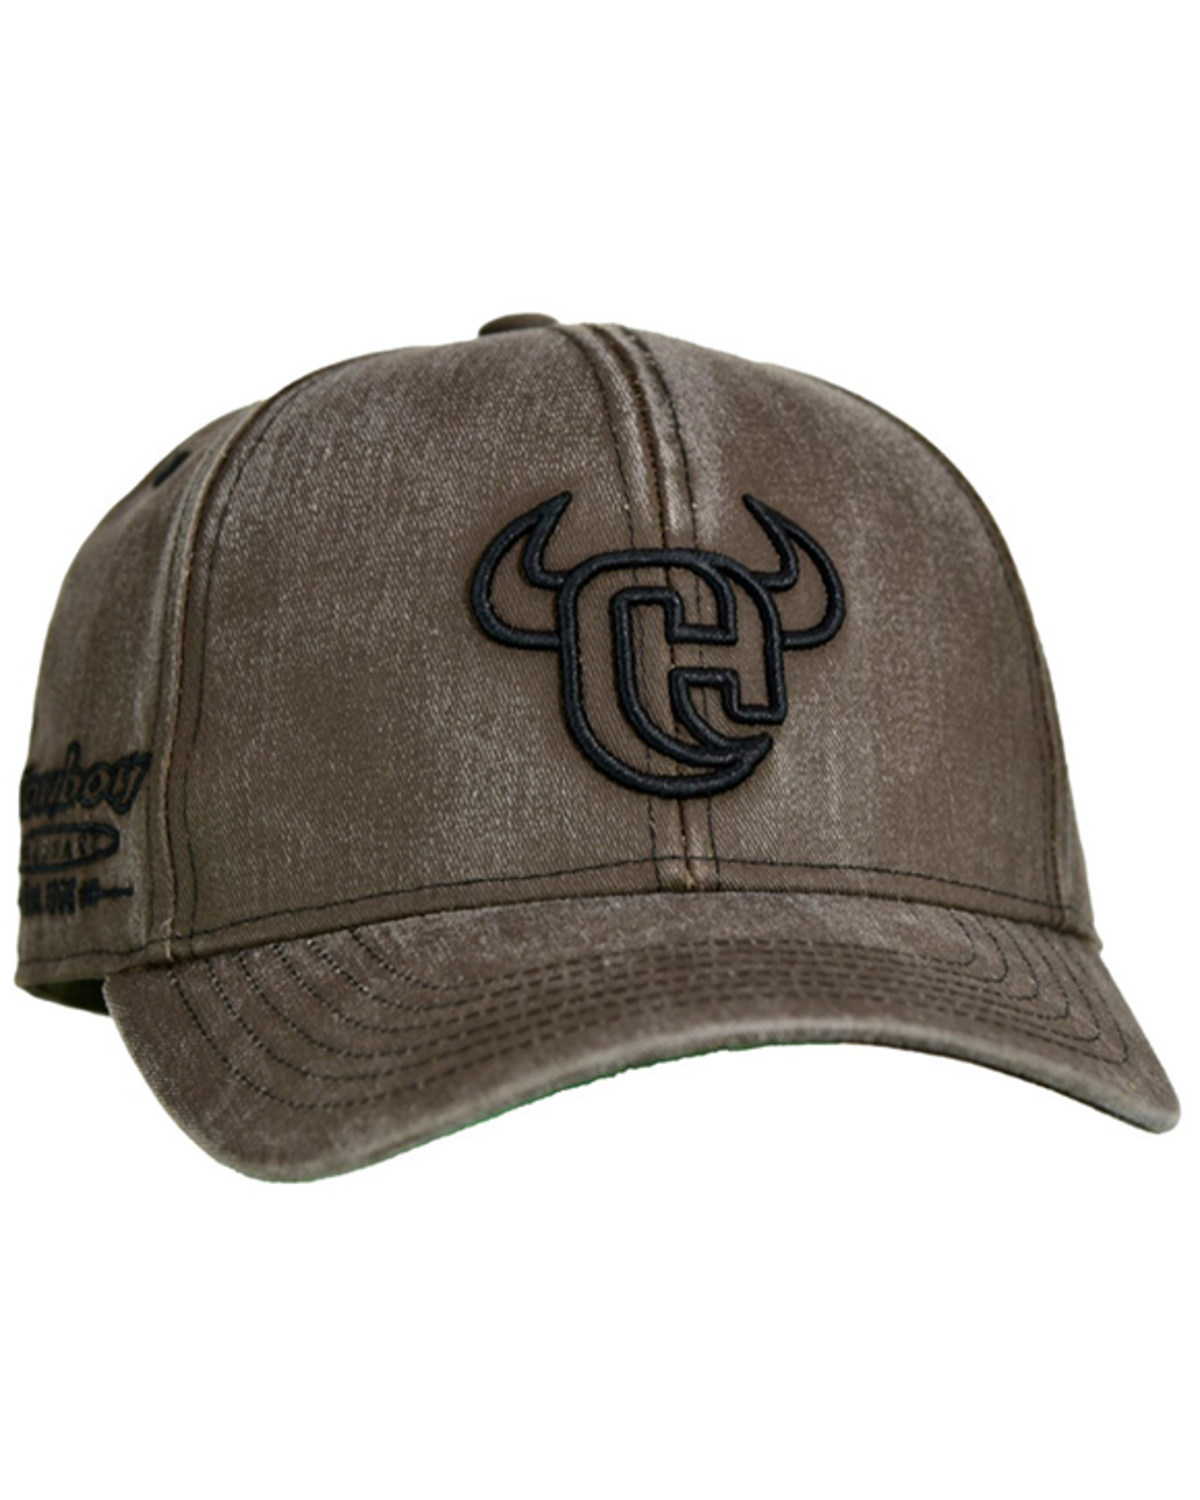 Cowboy Hardware Men's Brown Washed Logo Ball Cap